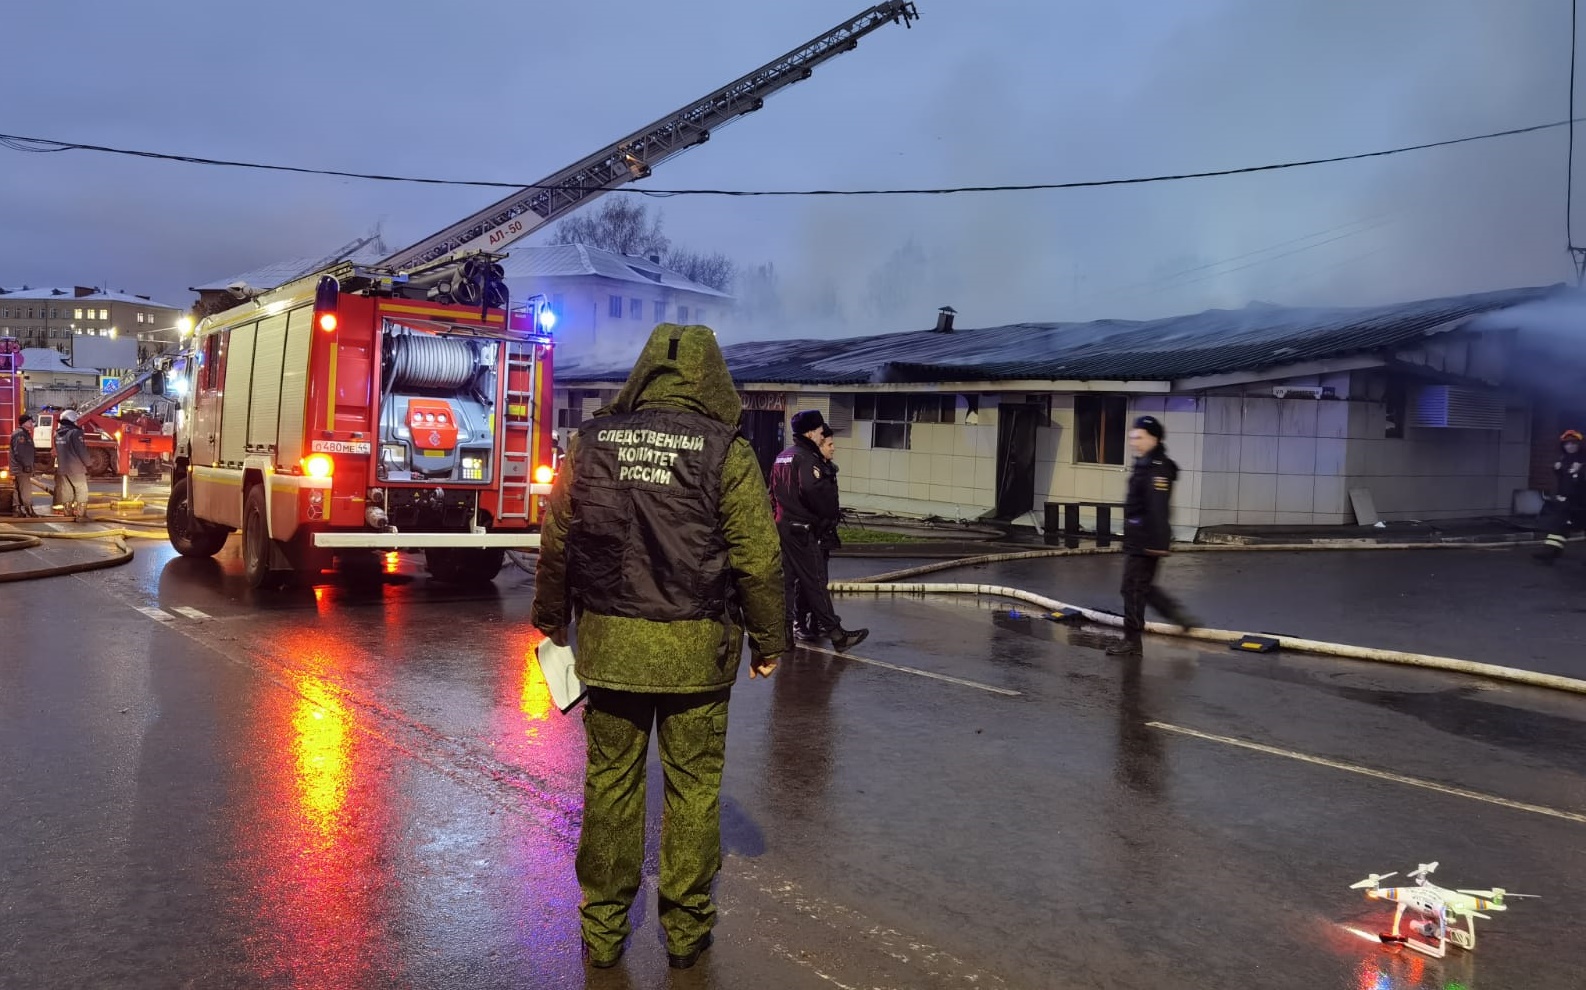 МЧС открыло горячую линию в связи с пожаром в ночном клубе Полигон в Костроме